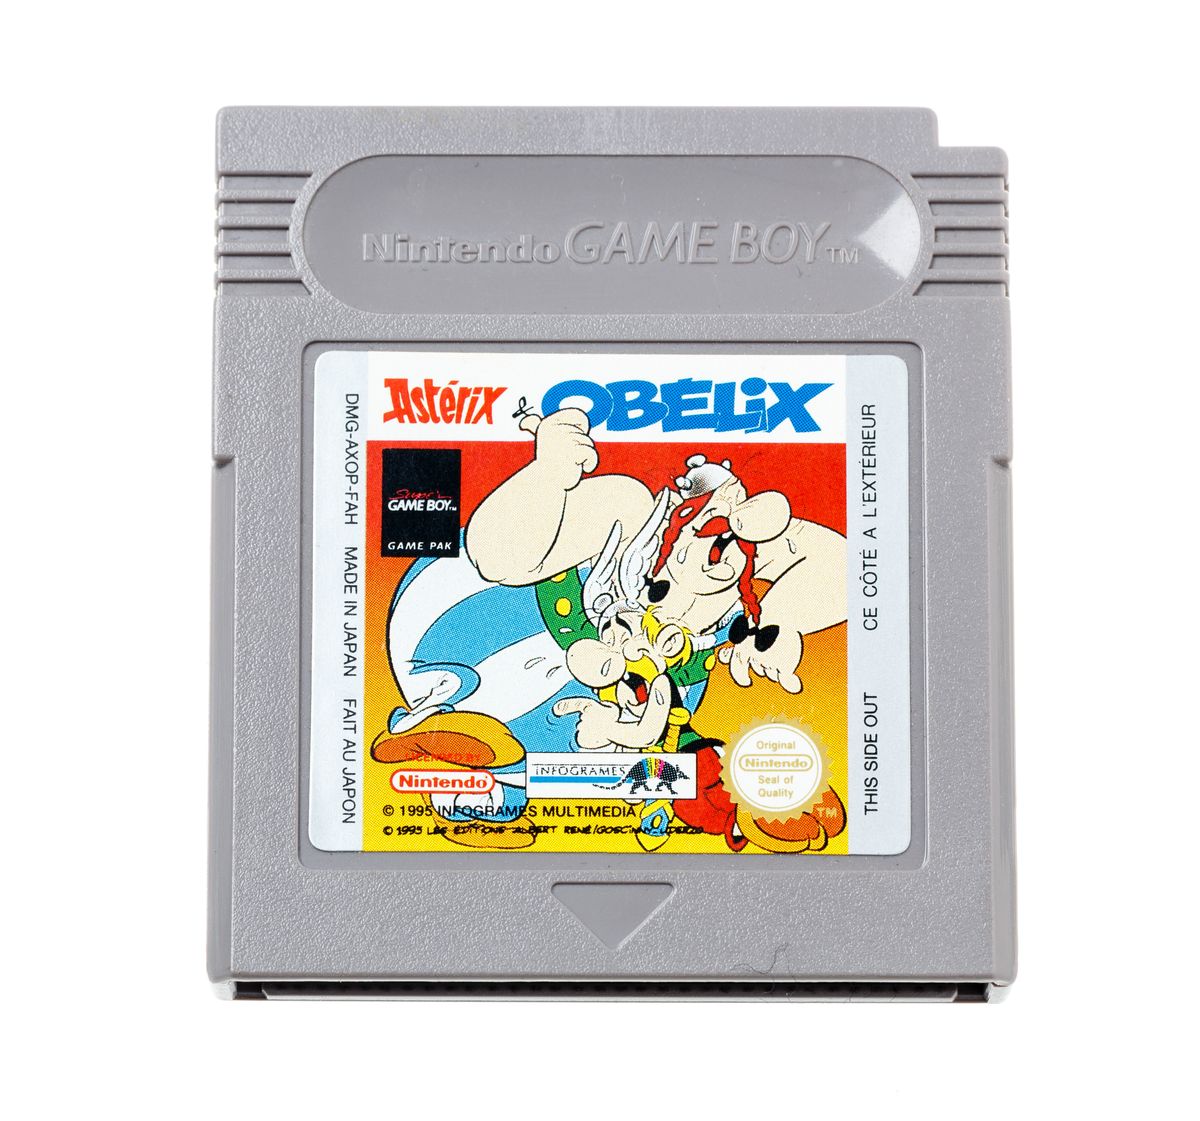 Asterix & Obelix | Gameboy Classic Games | RetroNintendoKopen.nl